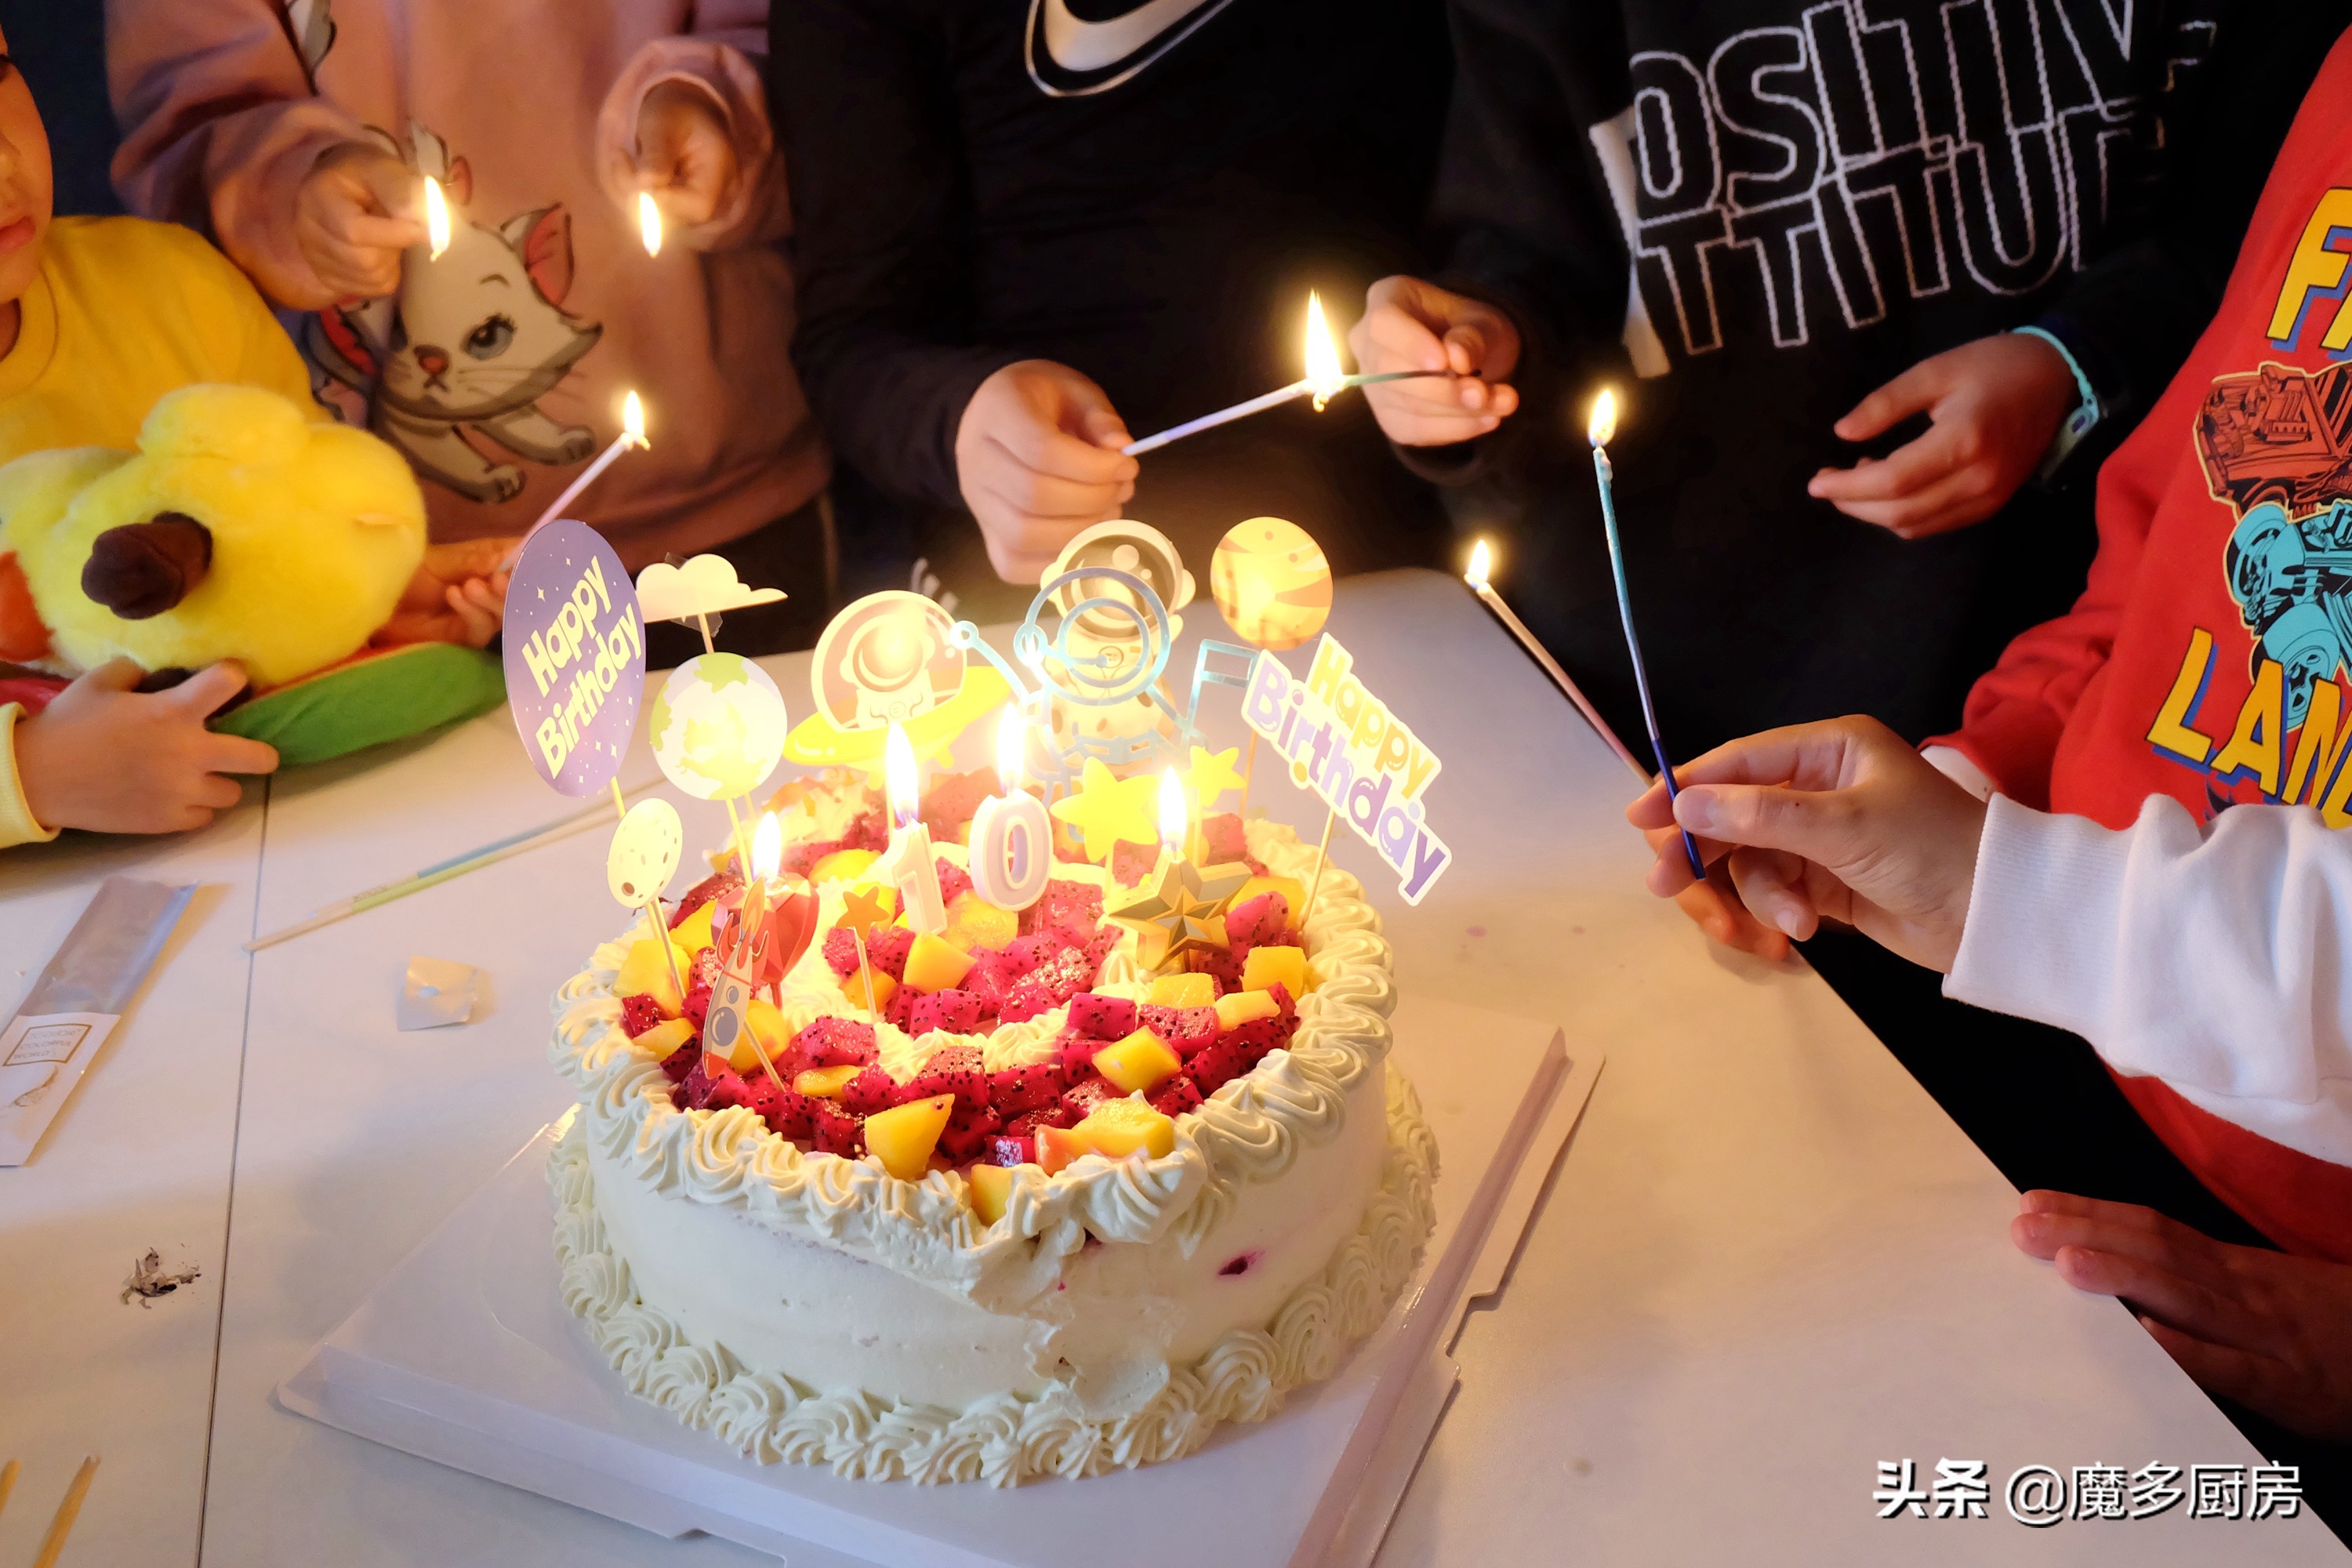 自制生日蛋糕在朋友圈火了，香甜不腻孩子爱吃！网友：接单吧